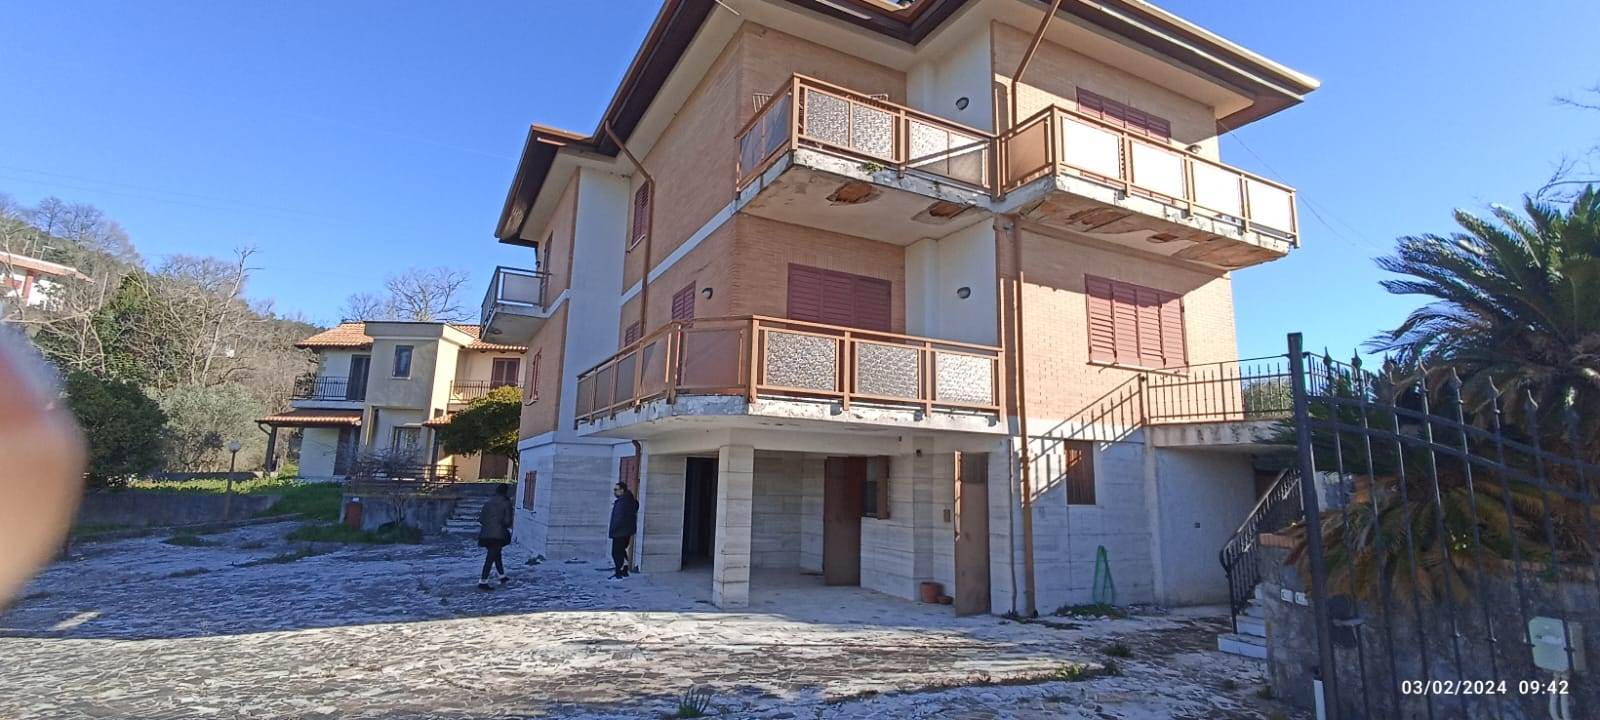 Villa in vendita a Montecorvino Pugliano, 8 locali, zona Località: SANTA TECLA, prezzo € 200.000 | PortaleAgenzieImmobiliari.it